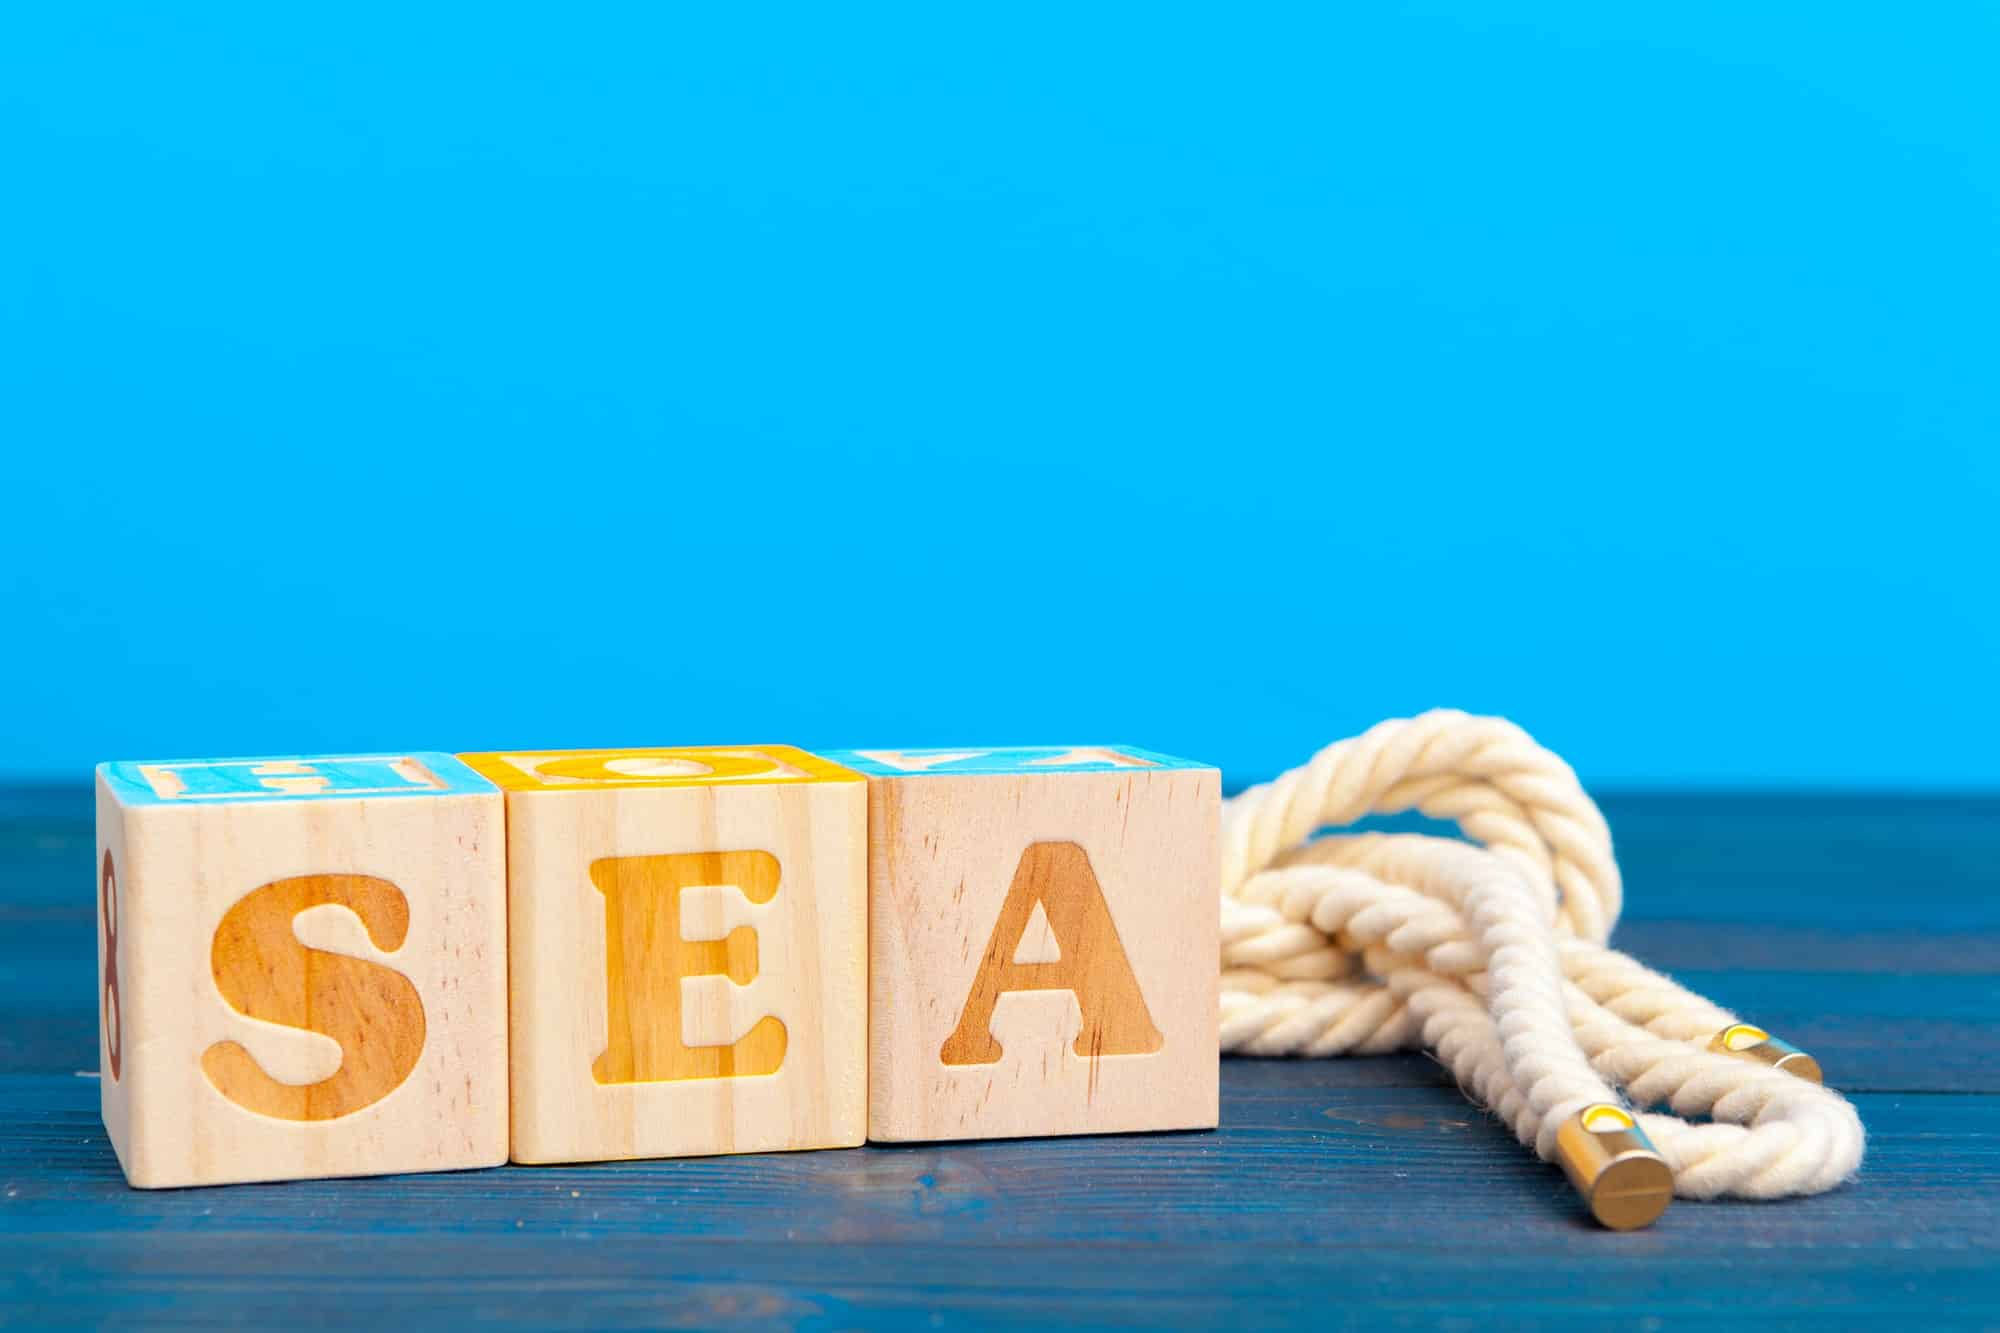 Quelles sont les étapes clés d’une bonne stratégie SEA ?